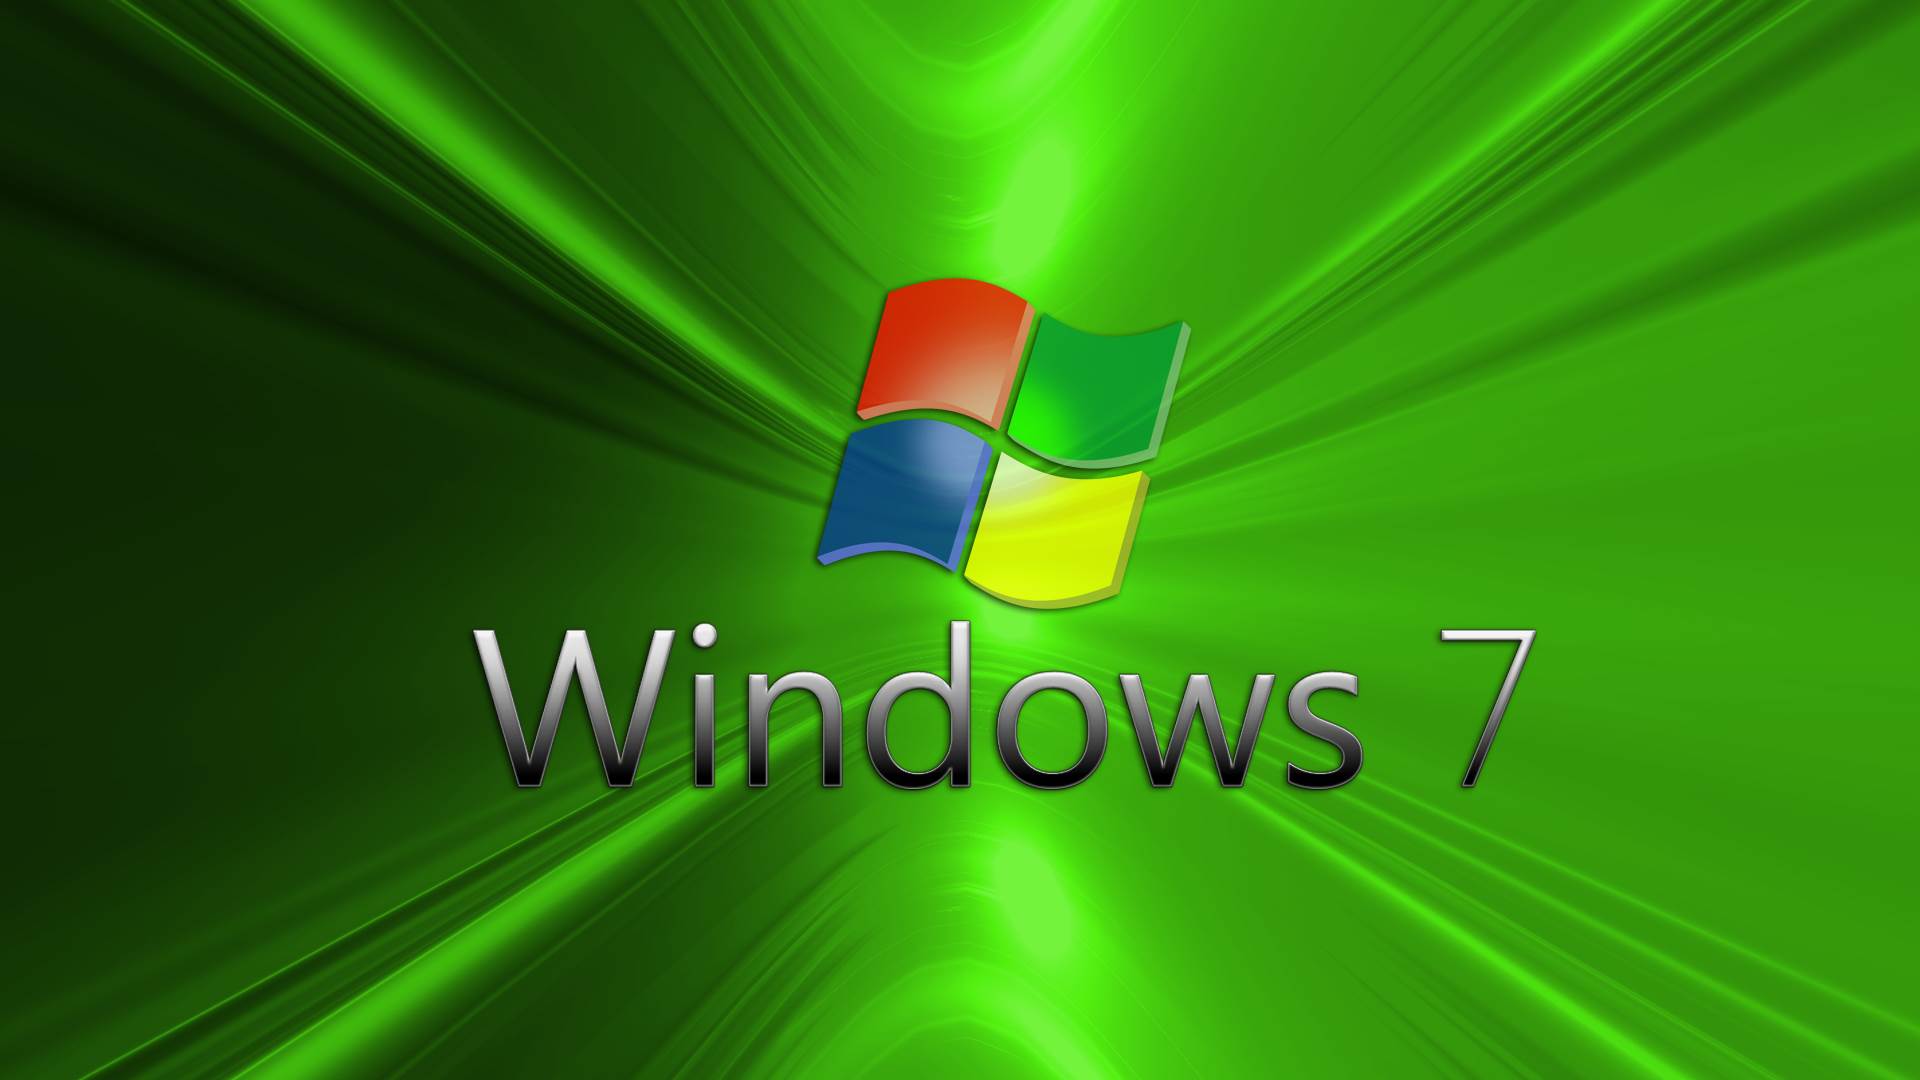 Картинки для Windows 7 на рабочий стол (25 фото)